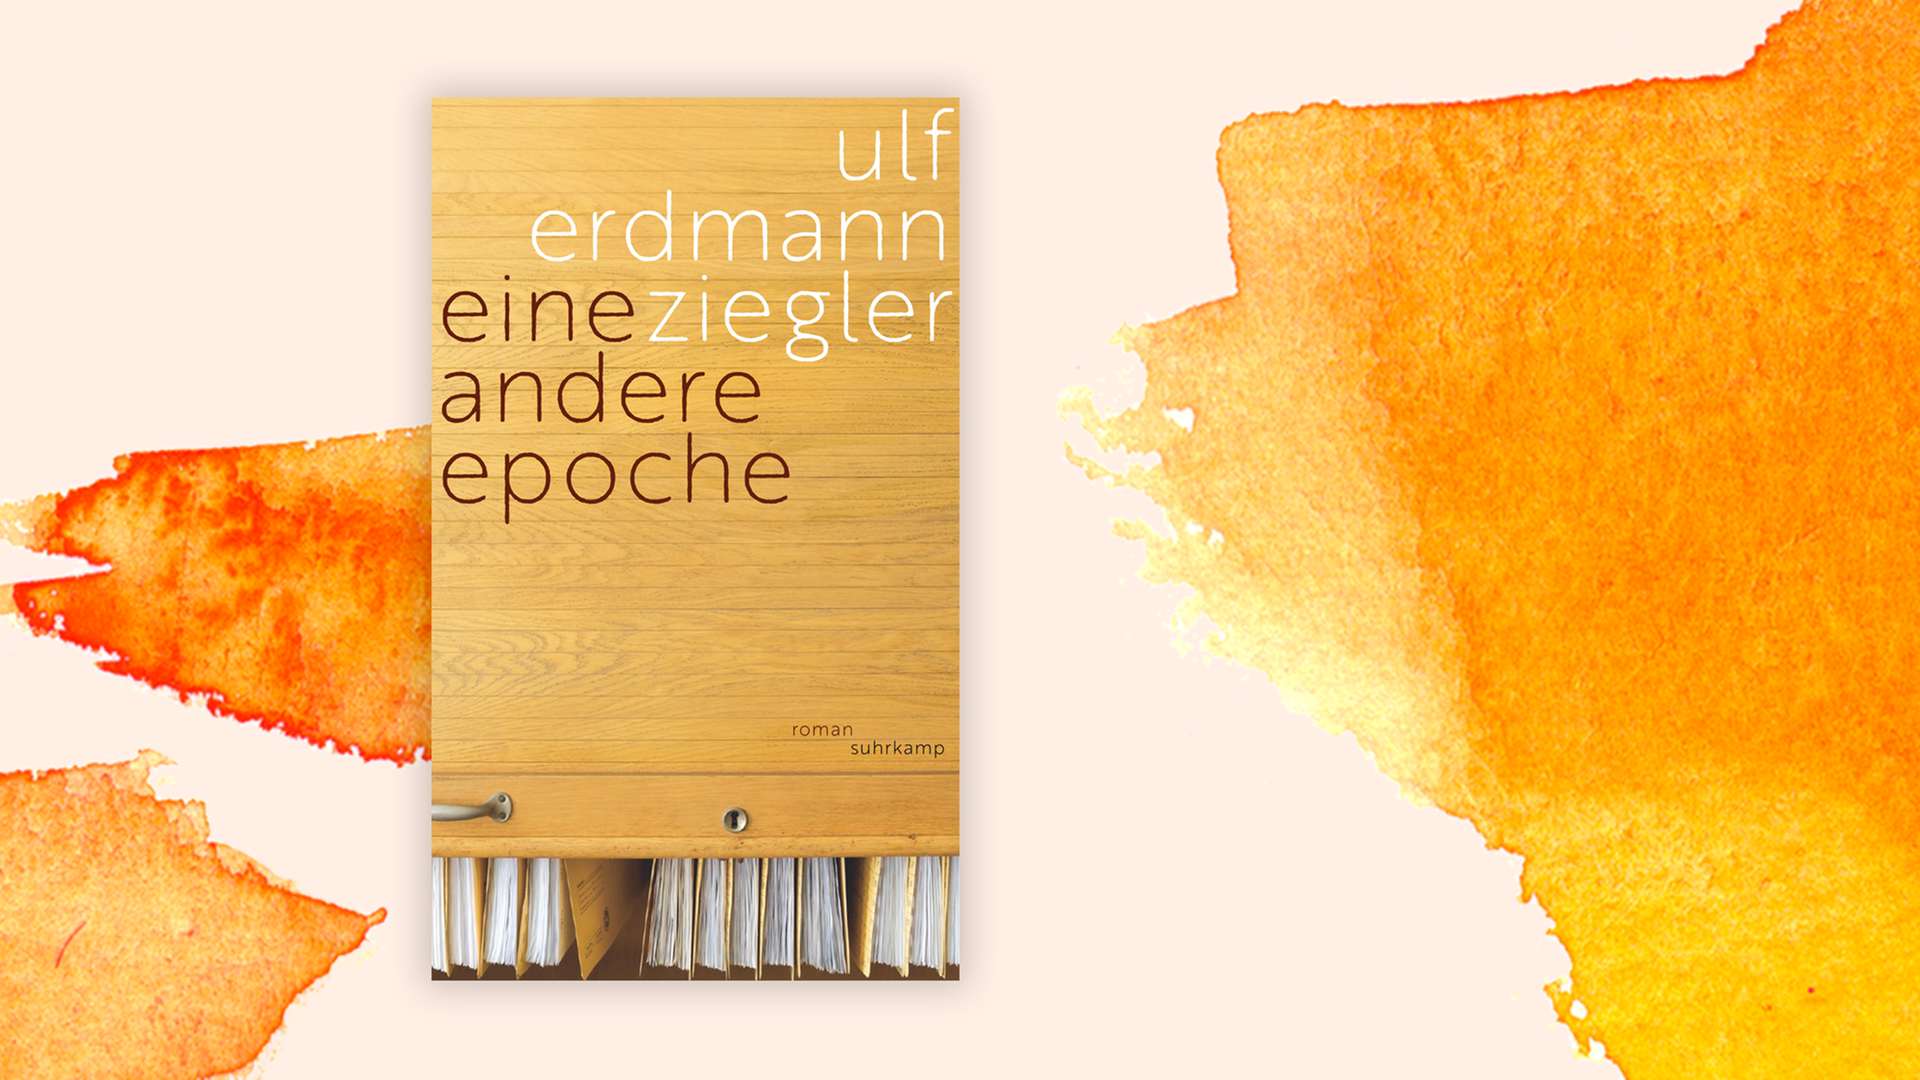 Zu sehen ist das Cover des Buches "Eine andere Epoche" von Ulf Erdmann Ziegler.